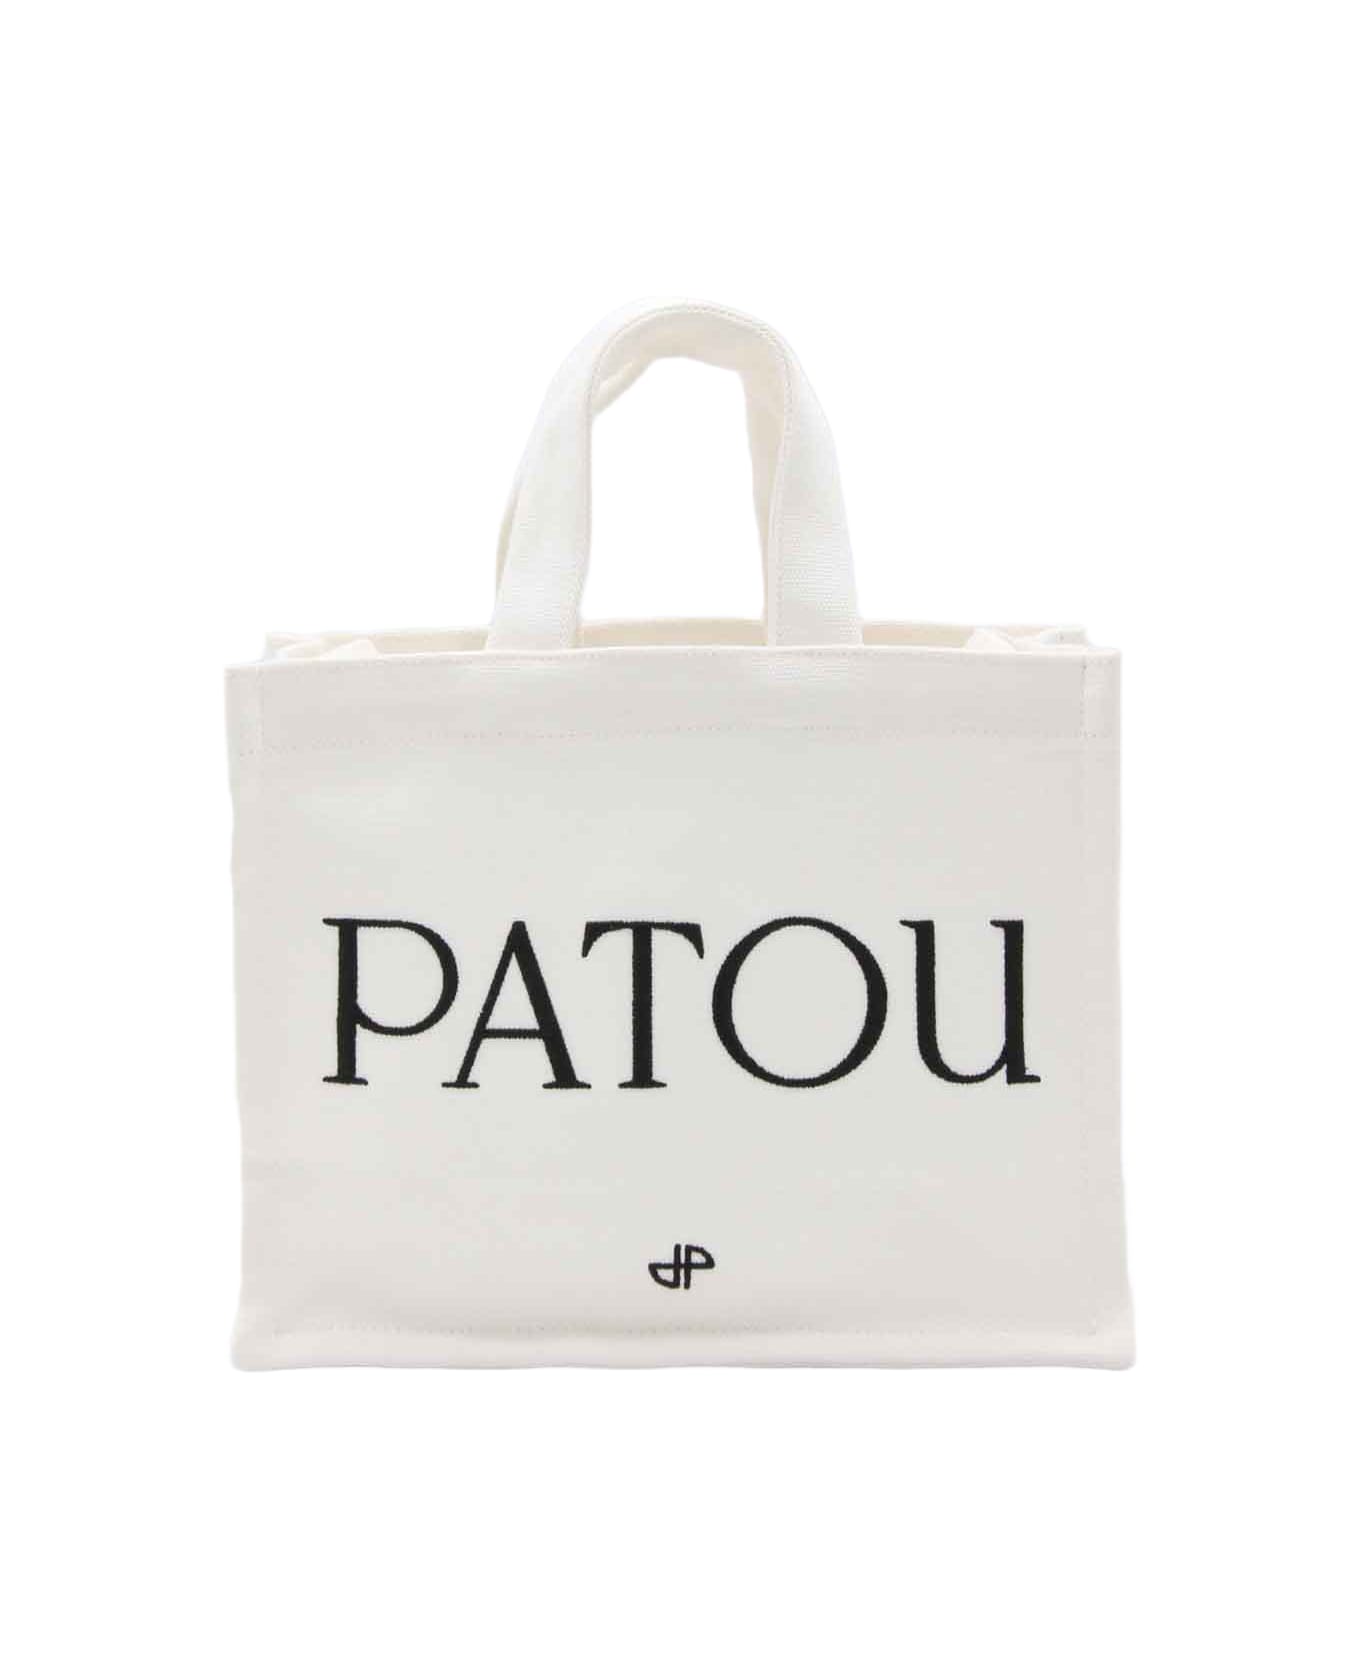 Patou White Cotton Small Tote Bag - WHITE